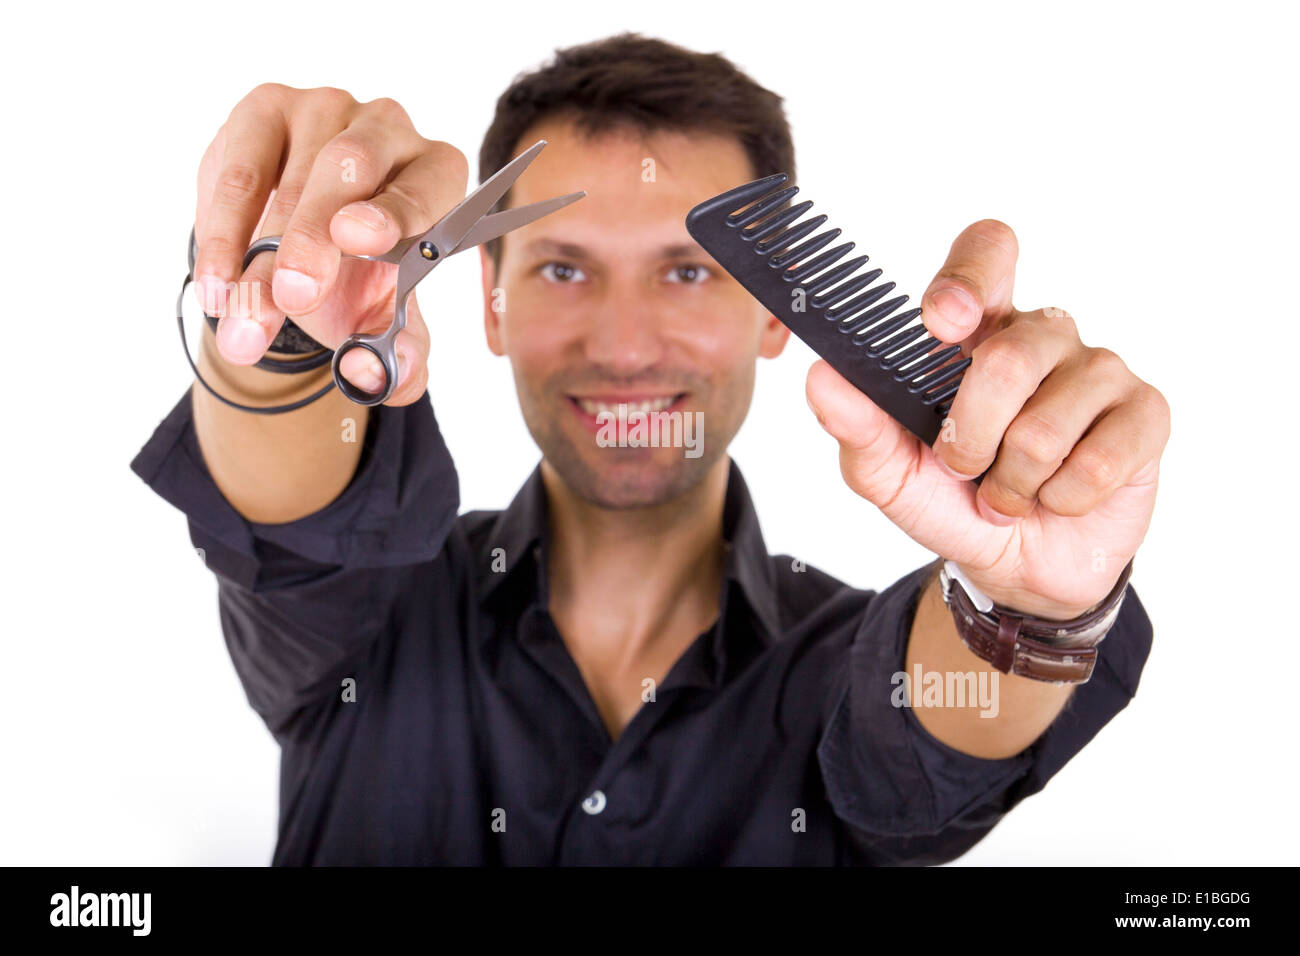 professioneller Friseur Holding Schere und Kamm, konzentrieren sich auf Hände Stockfoto